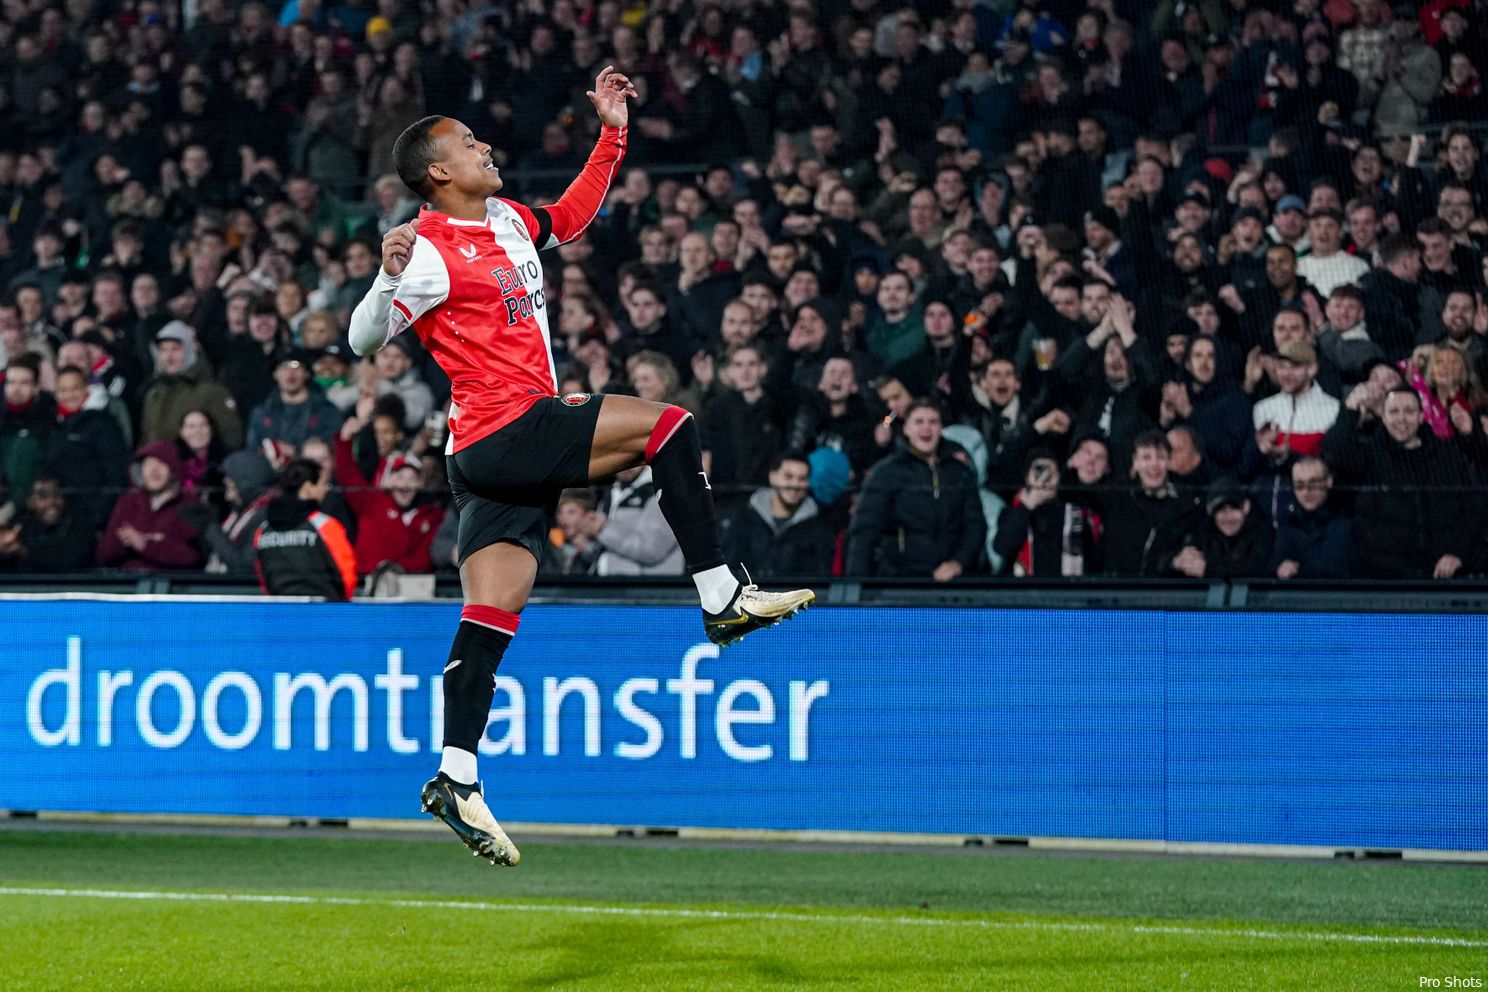 Buitenspelers belangrijk tijdens eenvoudige overwinning Feyenoord